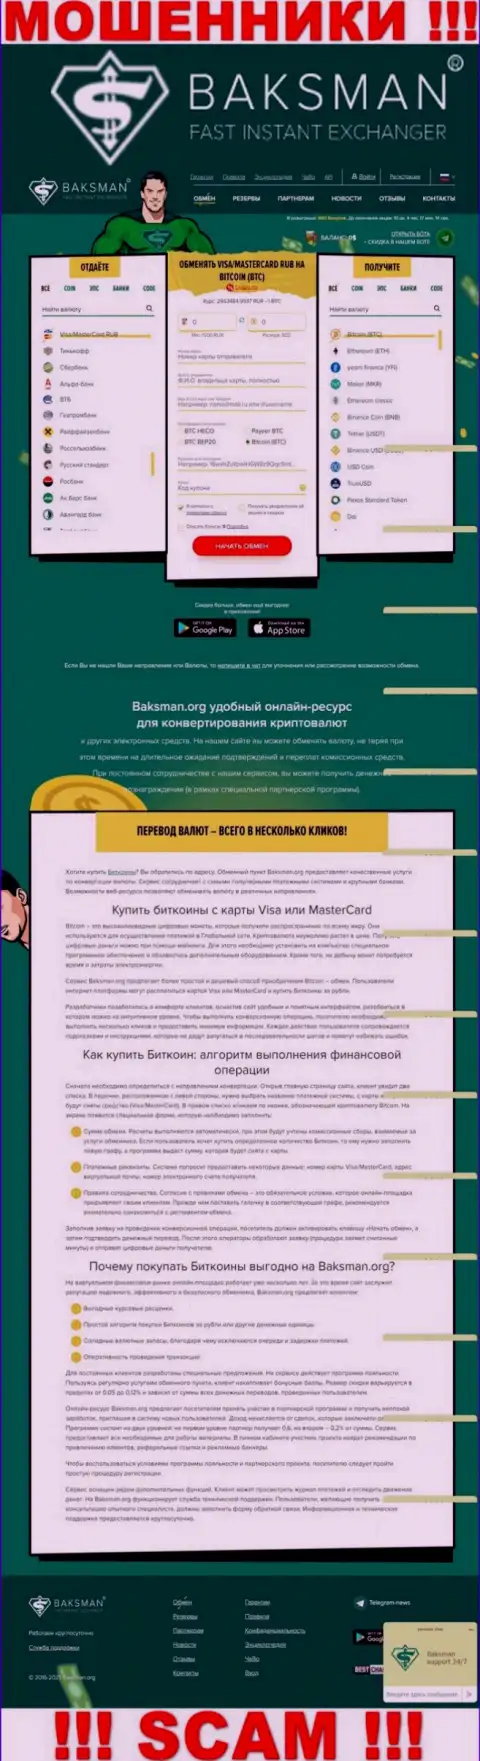 Вид официального портала противозаконно действующей организации Бакс Ман